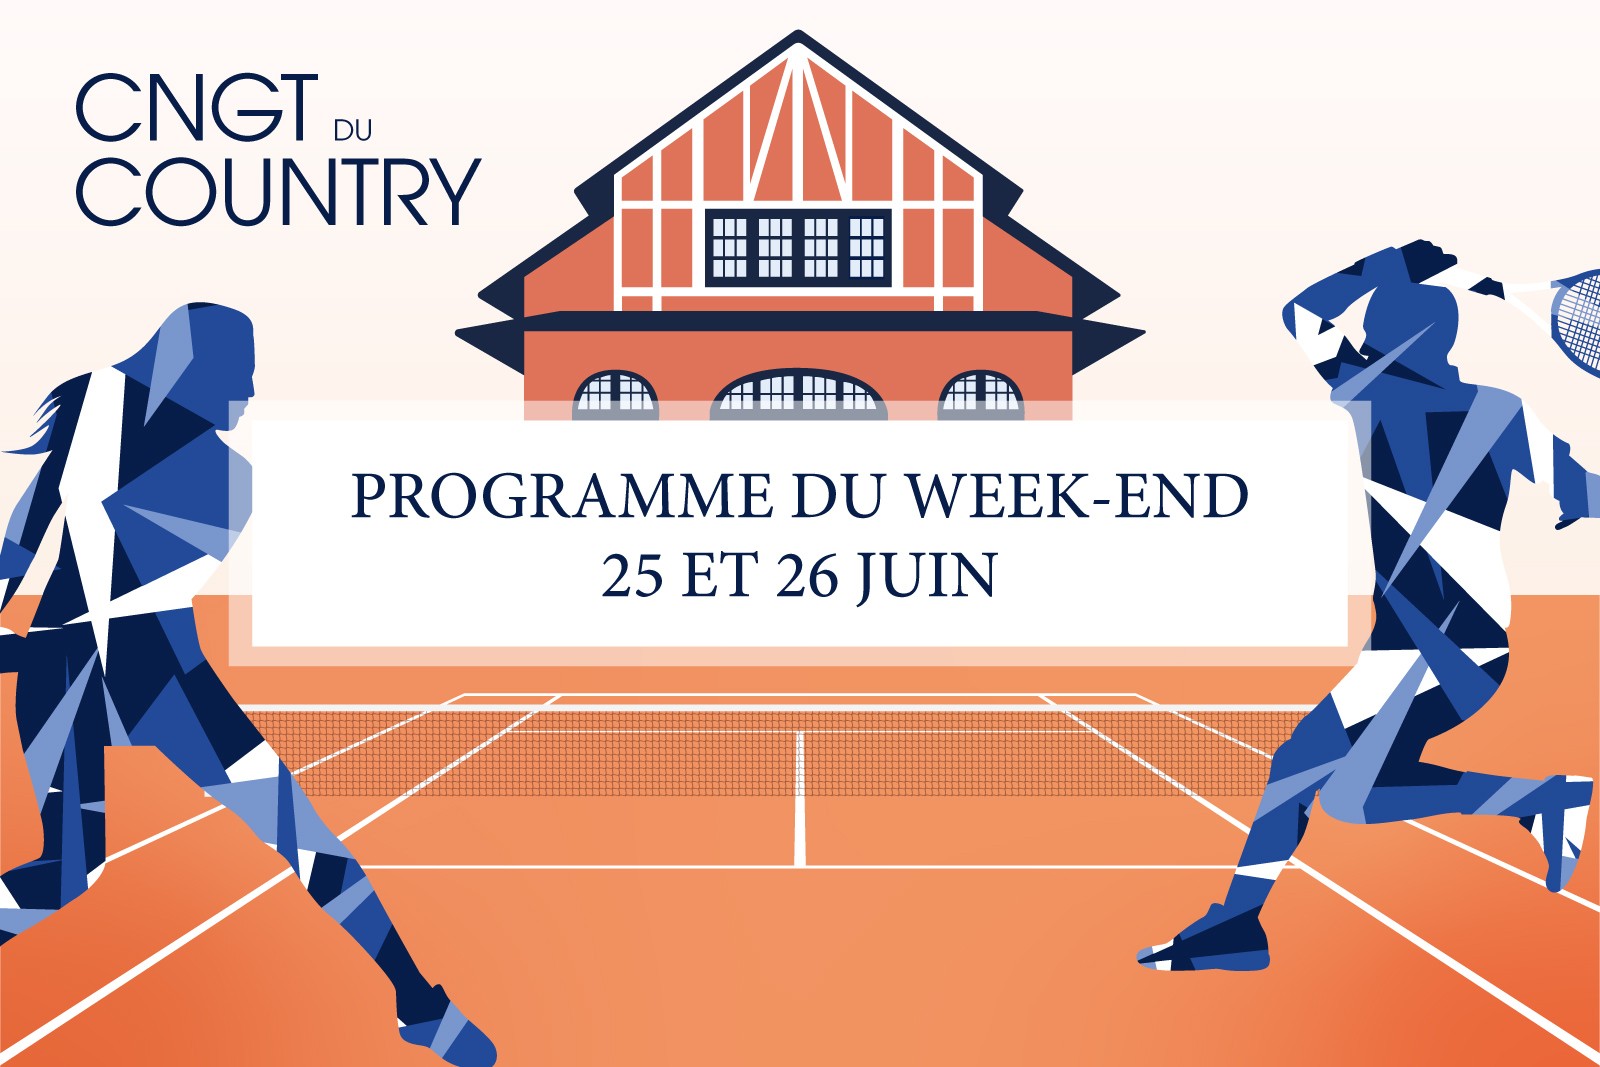 CNGT DU COUNTRY - Programme du week-end